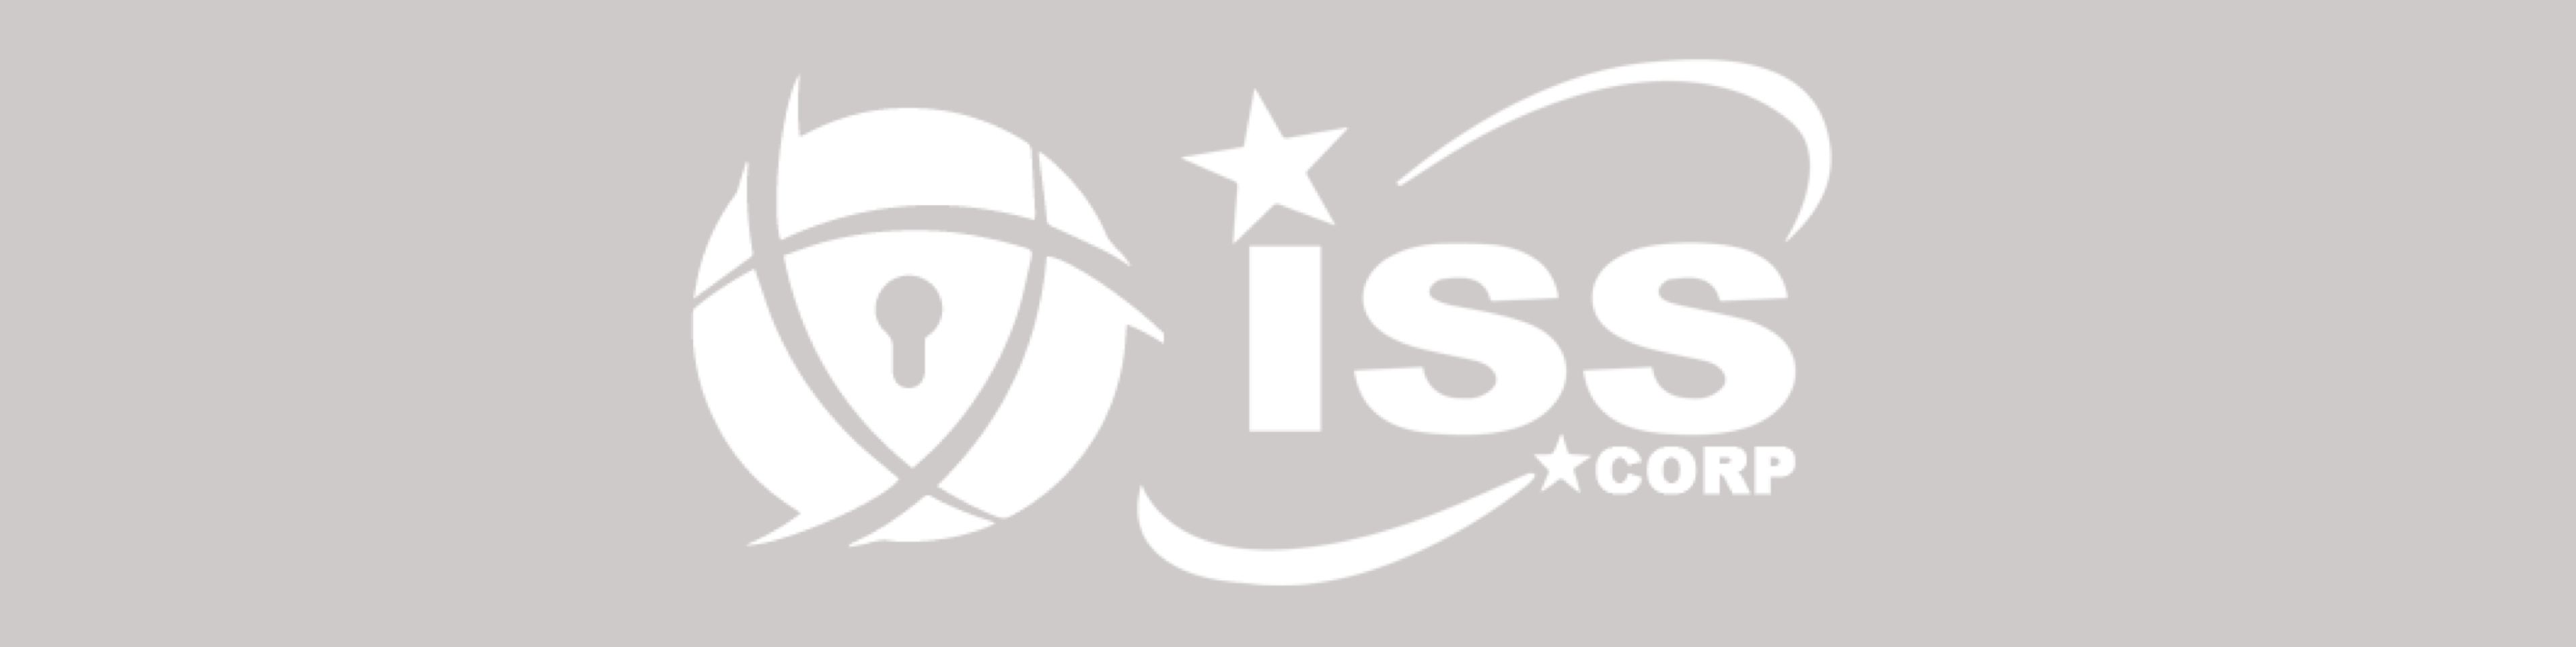 logotipo de la EEI